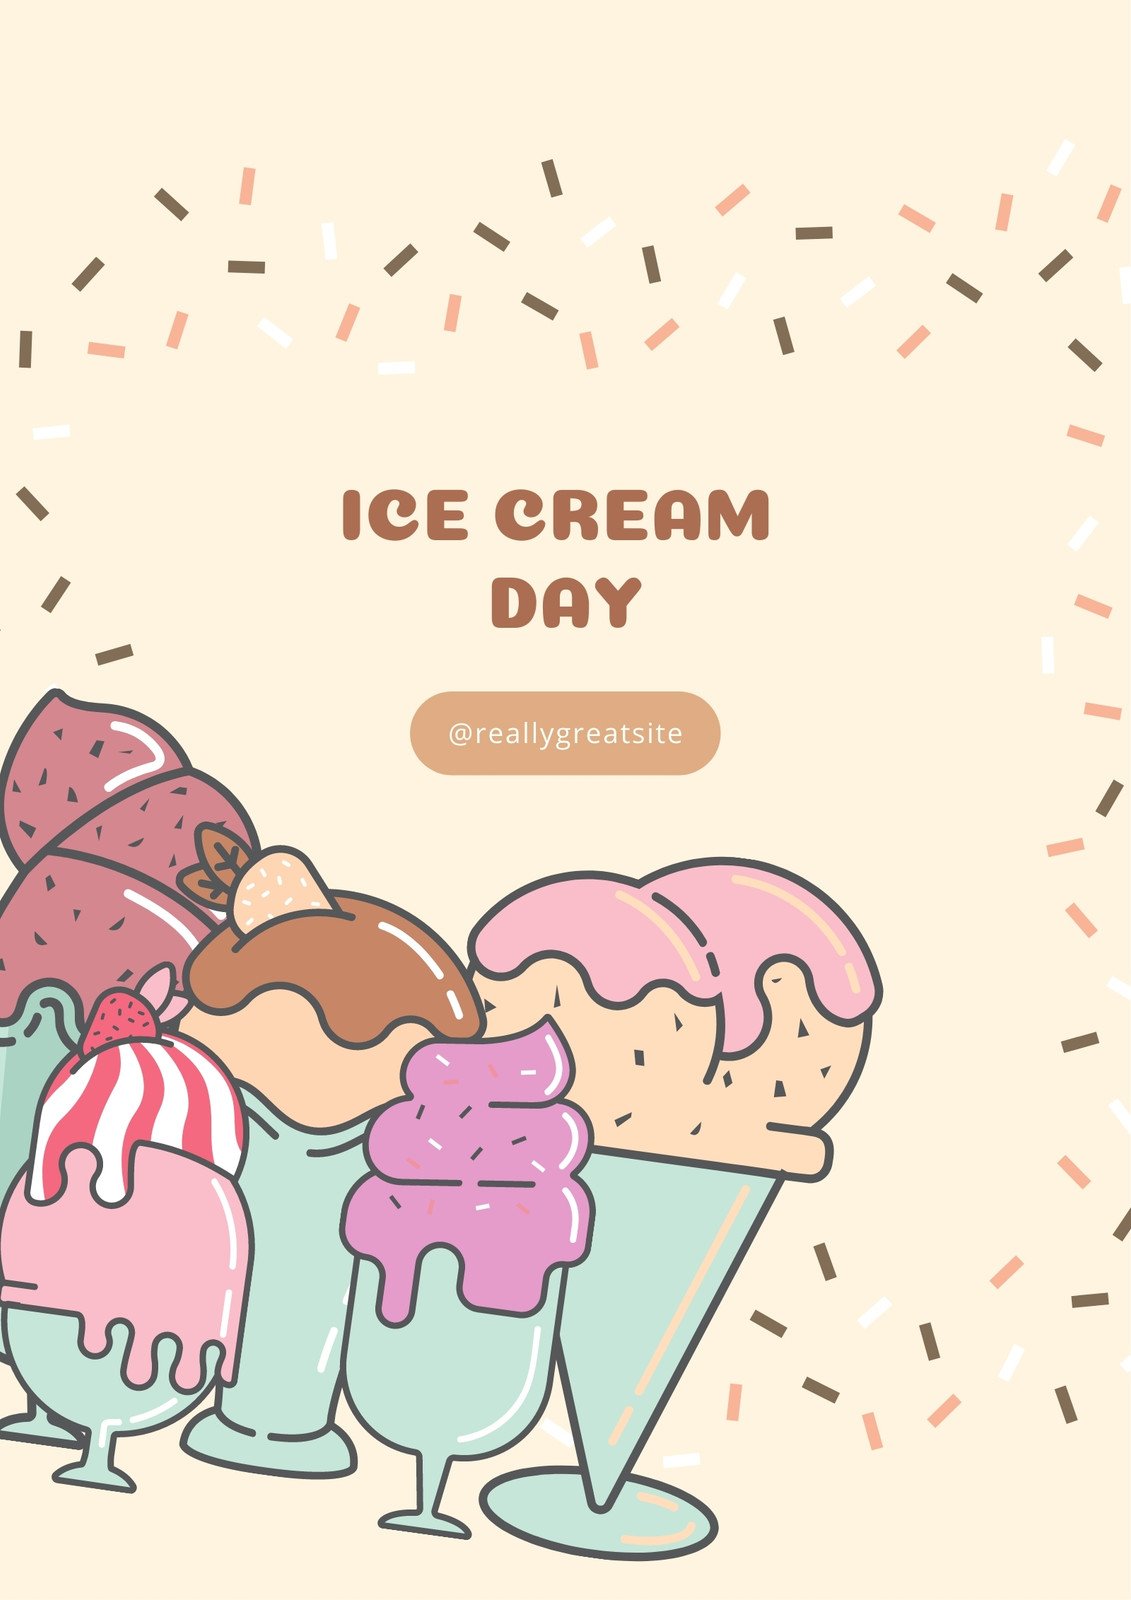 Premium Ice Cream, The Social Ice Cream Shop